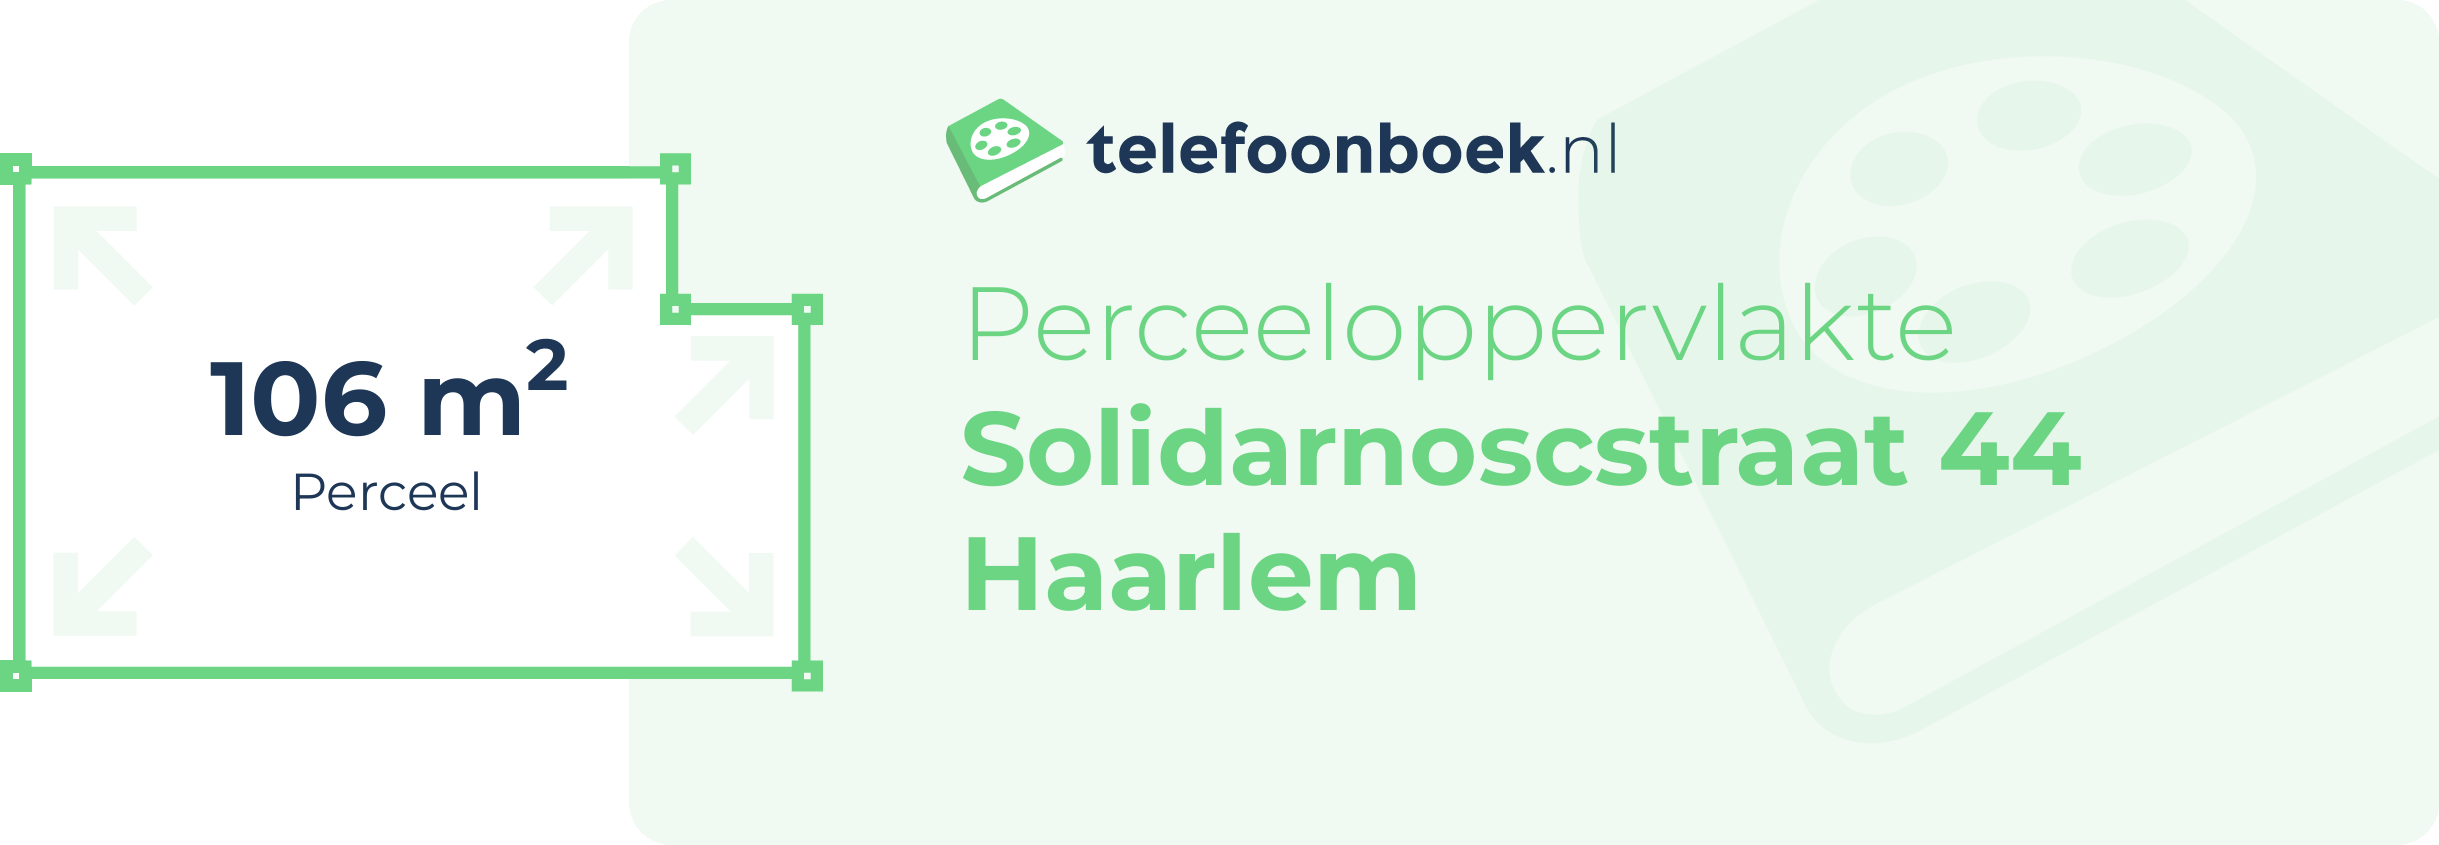 Perceeloppervlakte Solidarnoscstraat 44 Haarlem